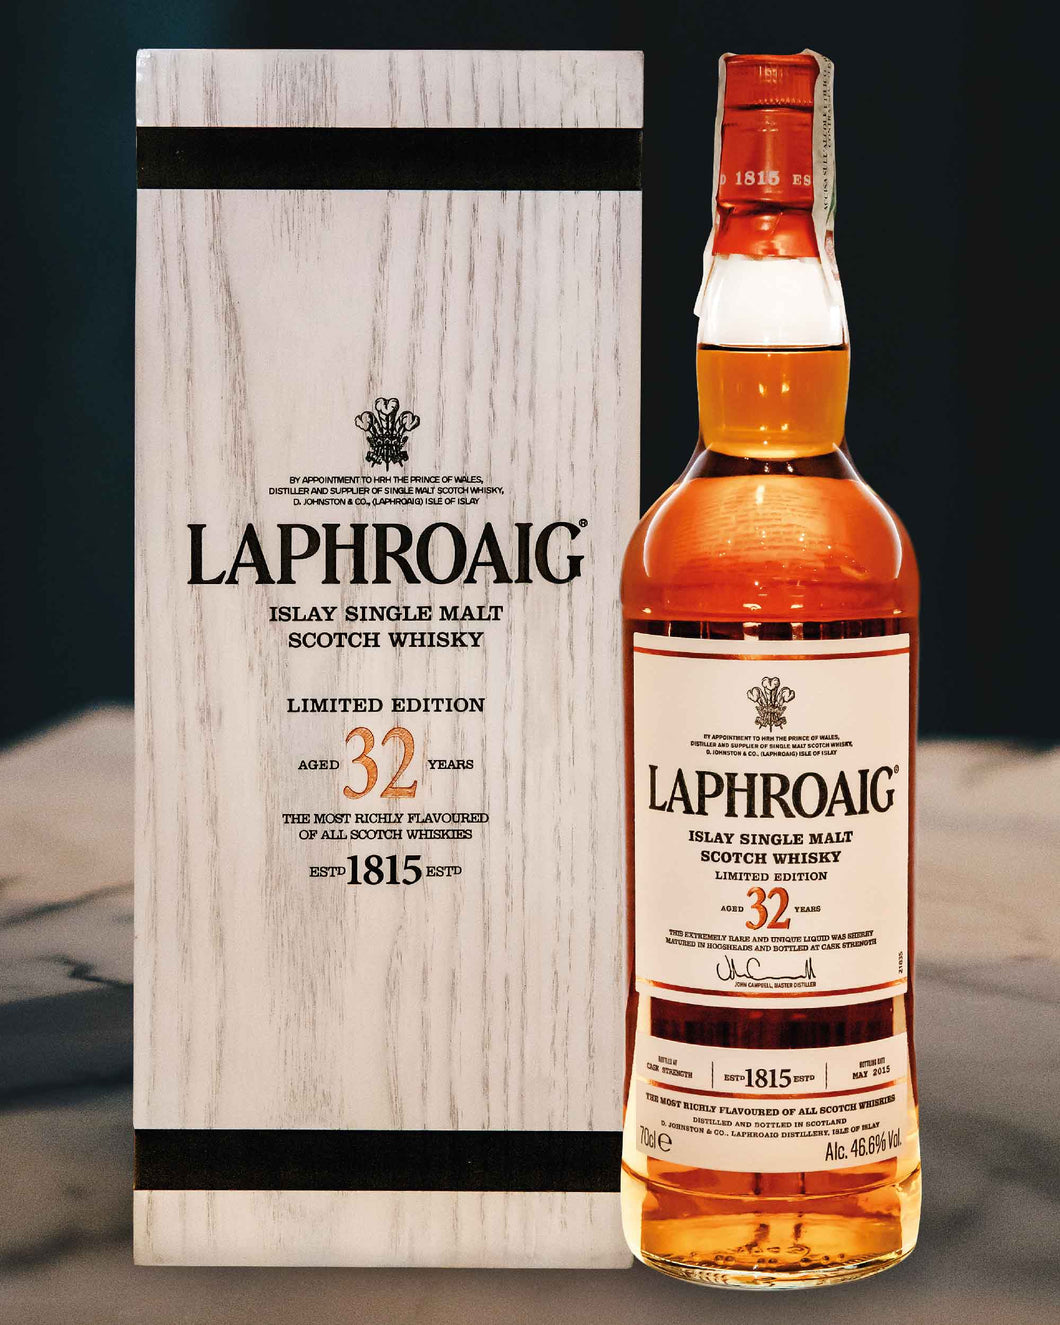 Laphroaig 32 Year Old Islay Single Malt Limited Edition